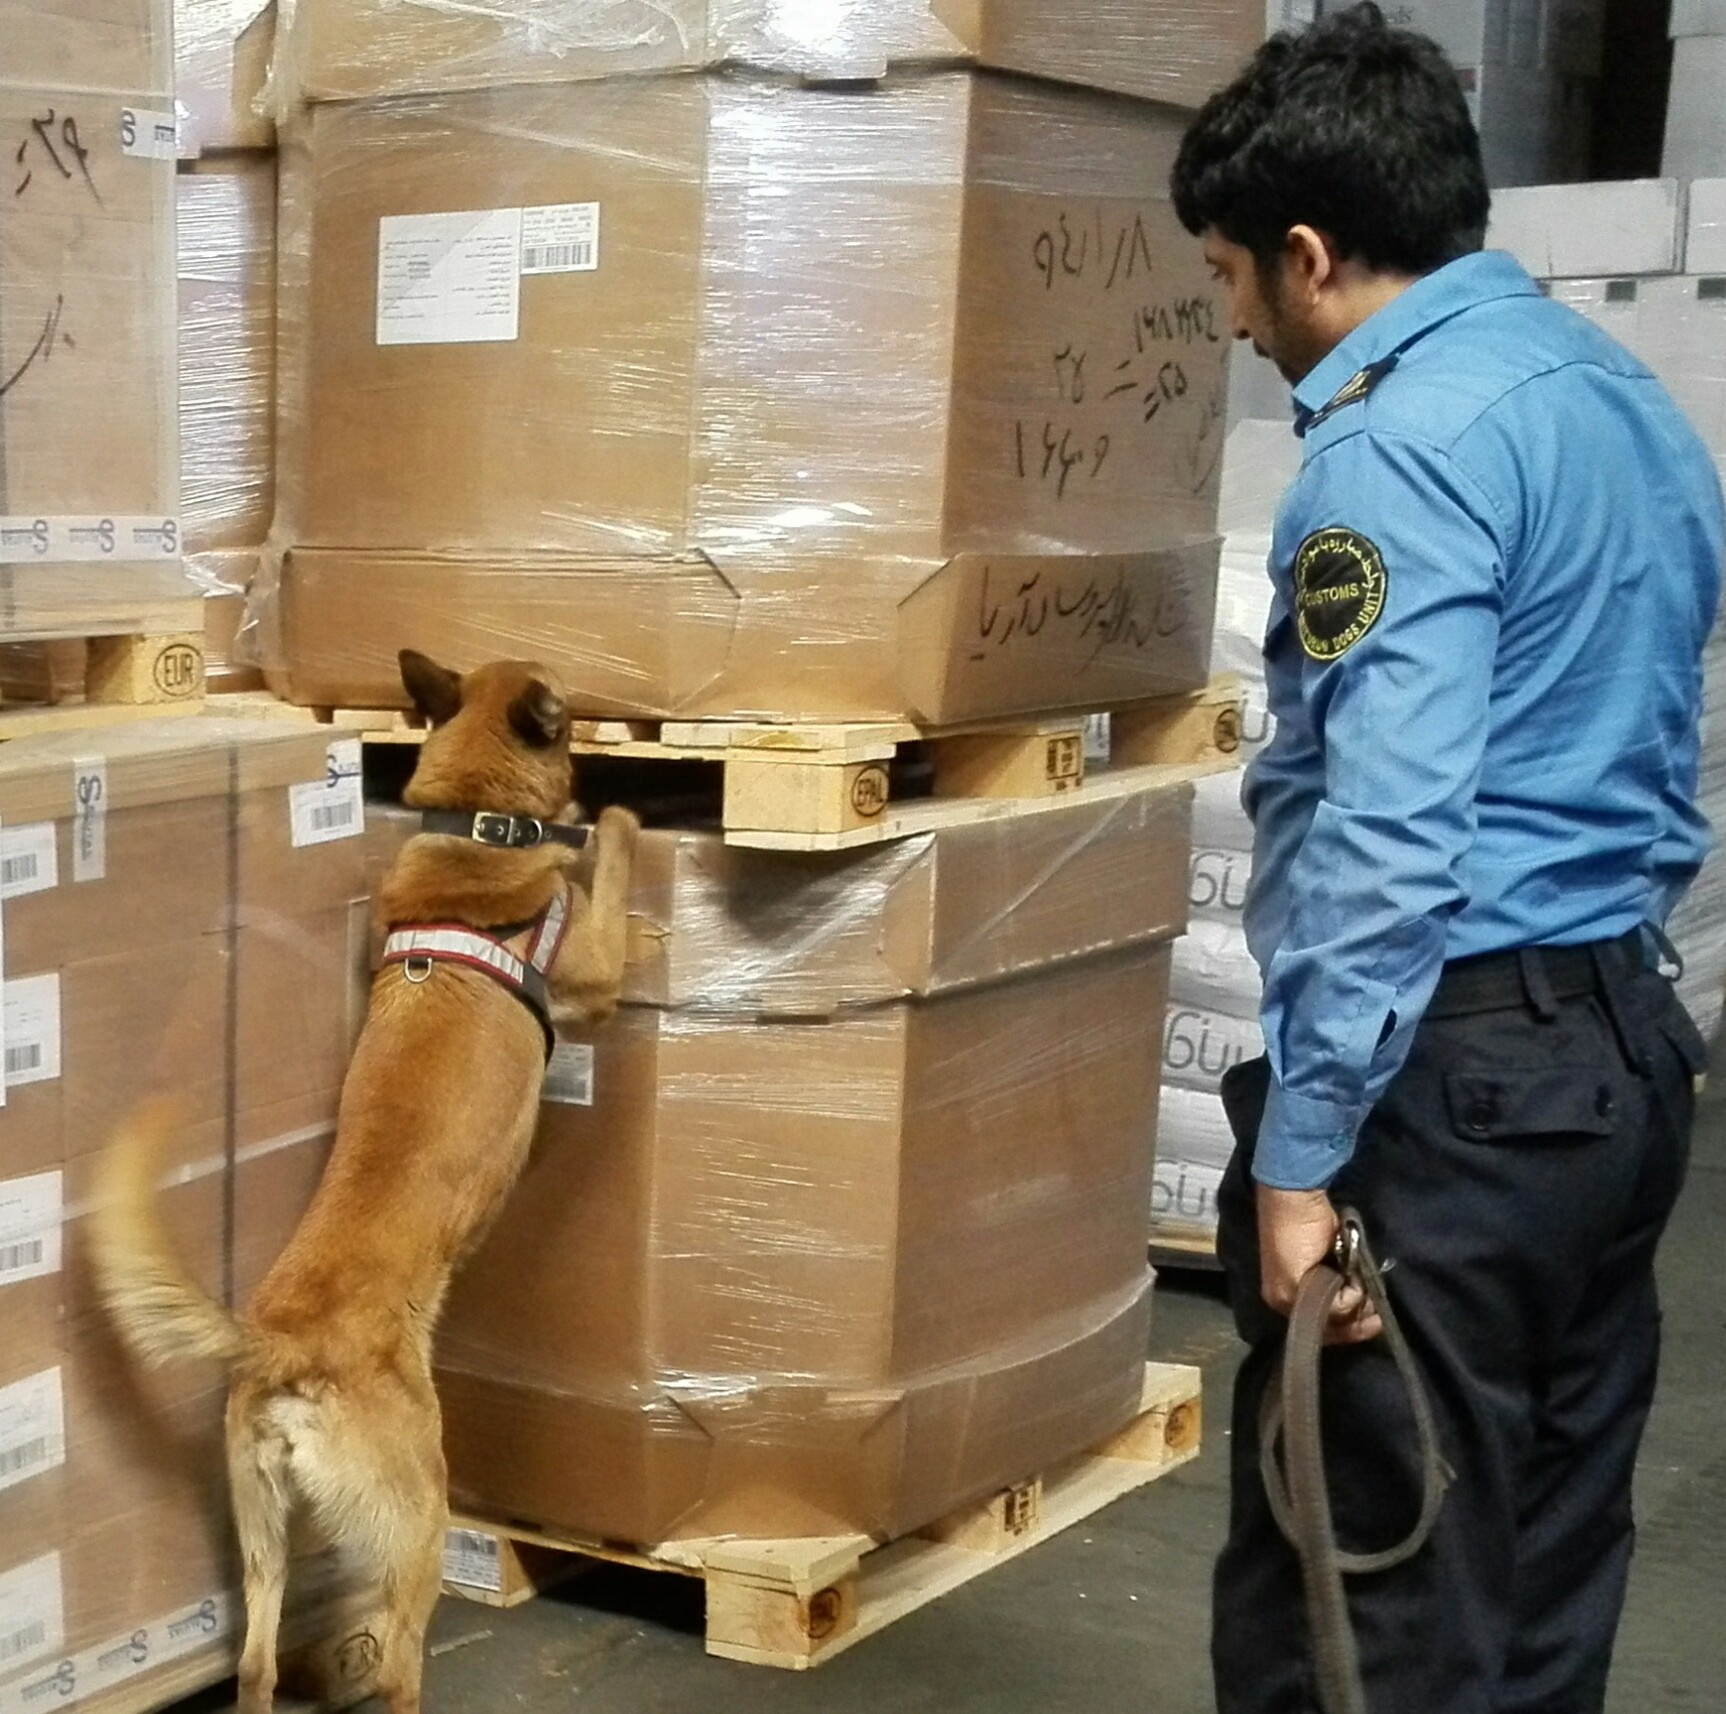 سگ هایی که تجارت ایران را پاک تر می کنند/سگ ها در نبرد با سختگیری برای کالاهای ایرانی